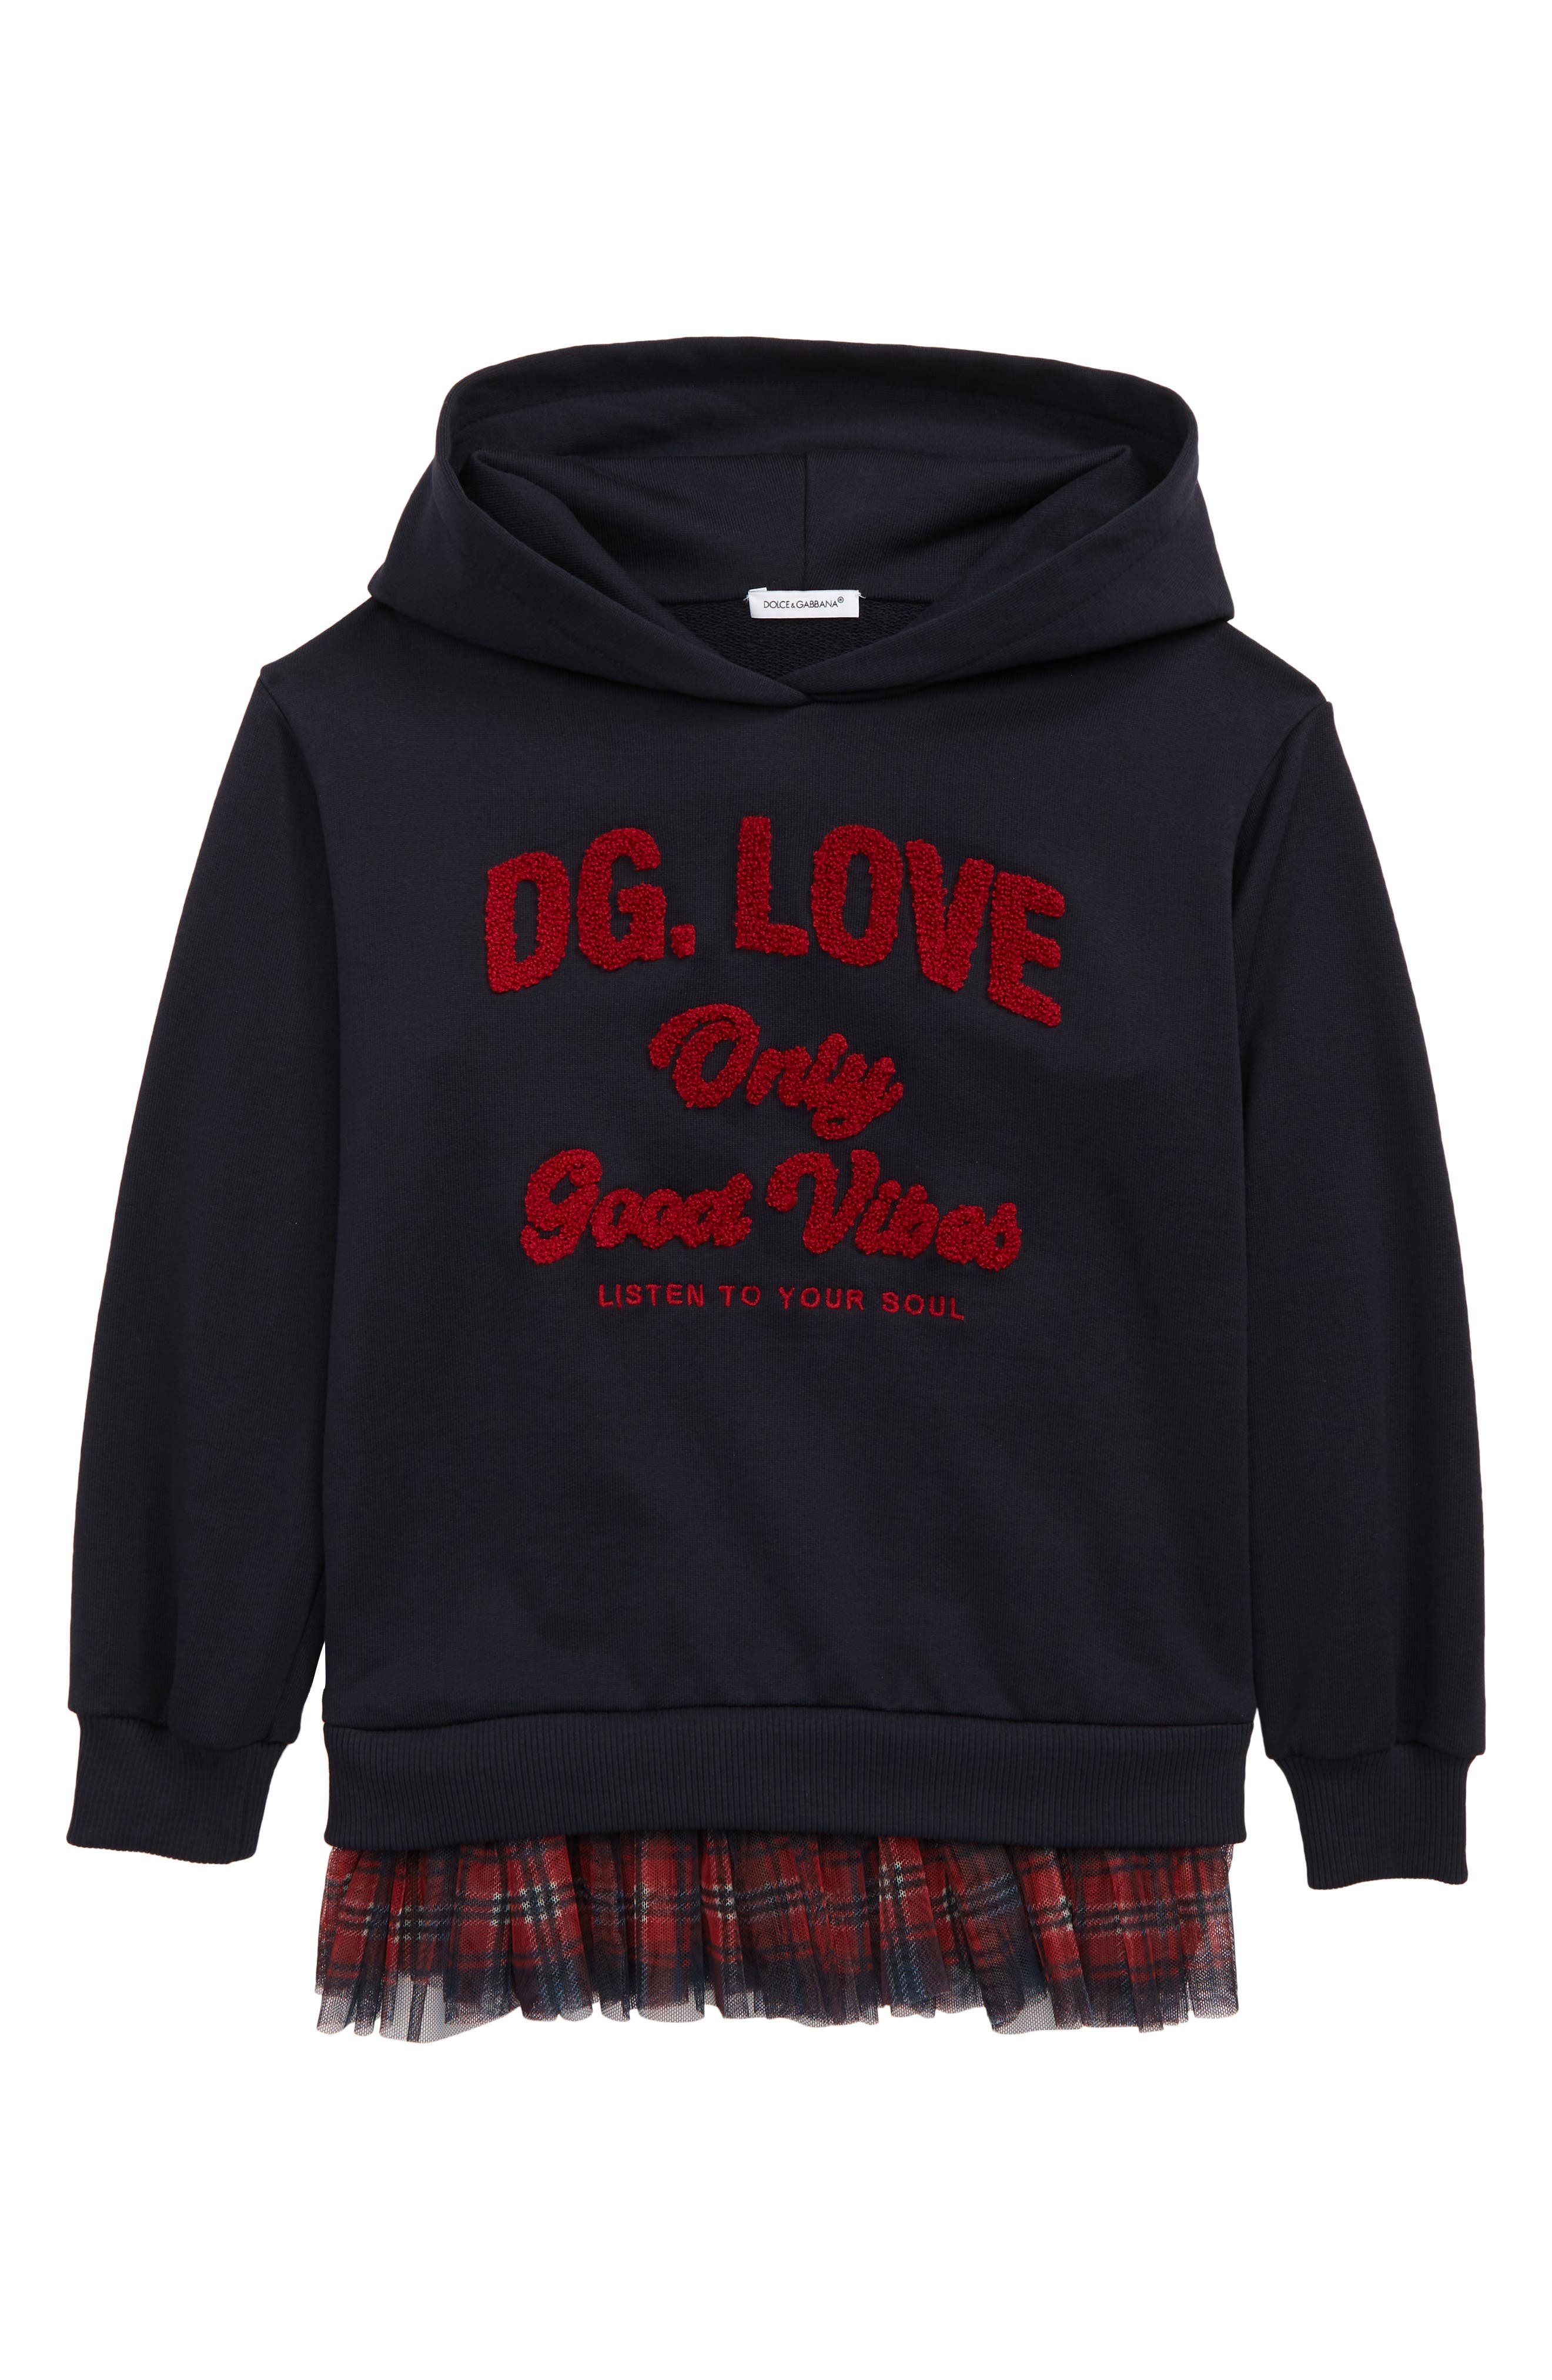 Dolce & Gabbana Kids' DG Love Graphic Hoodie in Dark Blue at Nordstrom, Size 6 Us